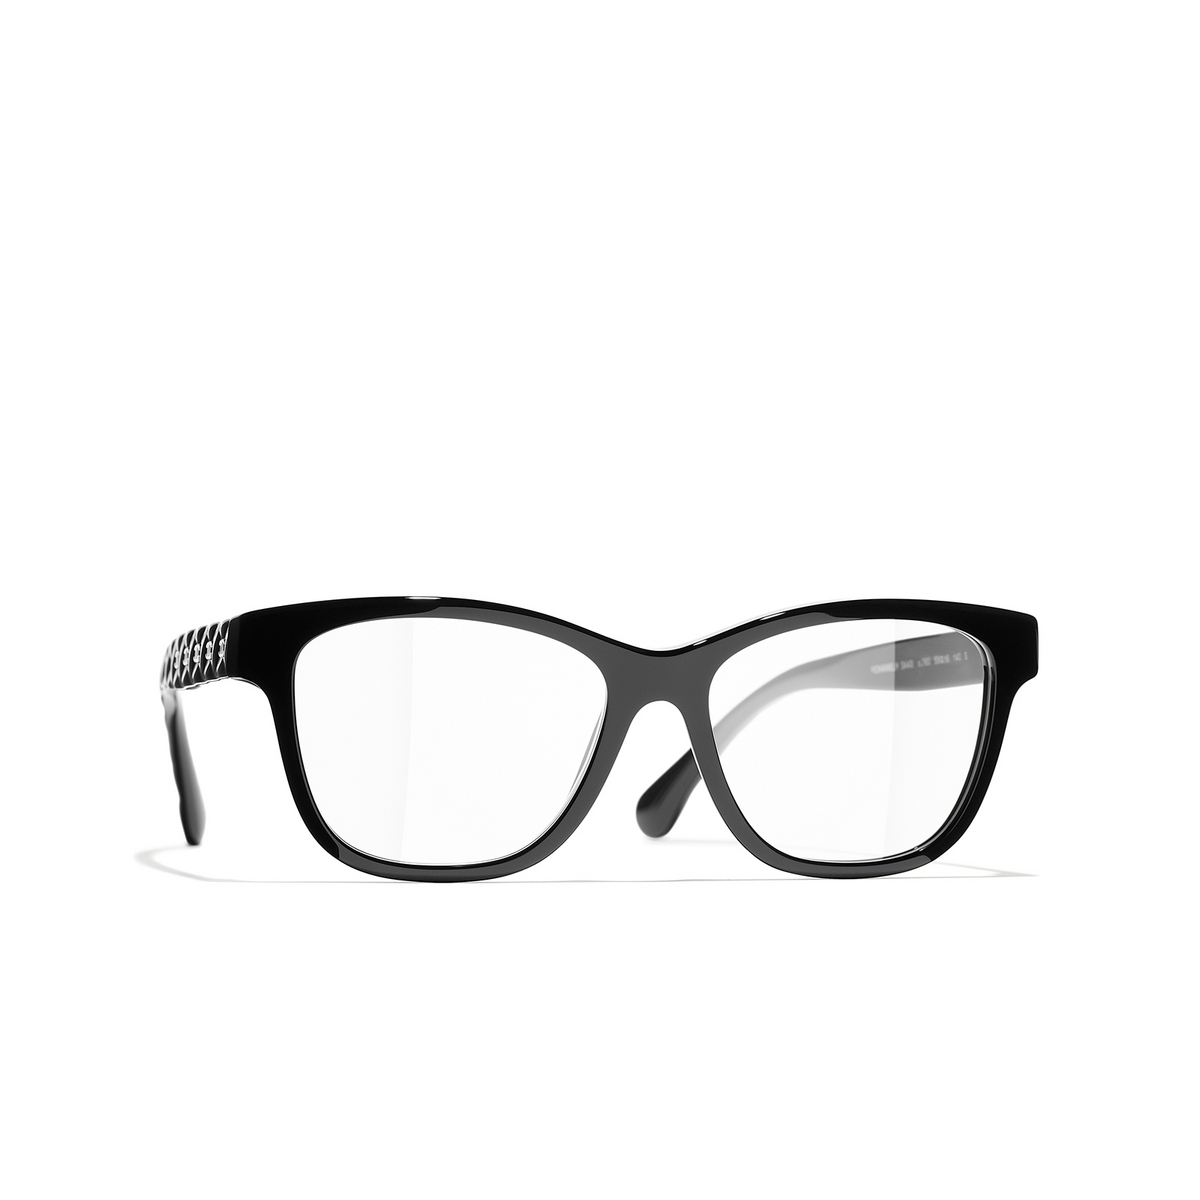 CHANEL square Eyeglasses C760 Black & White - three-quarters view